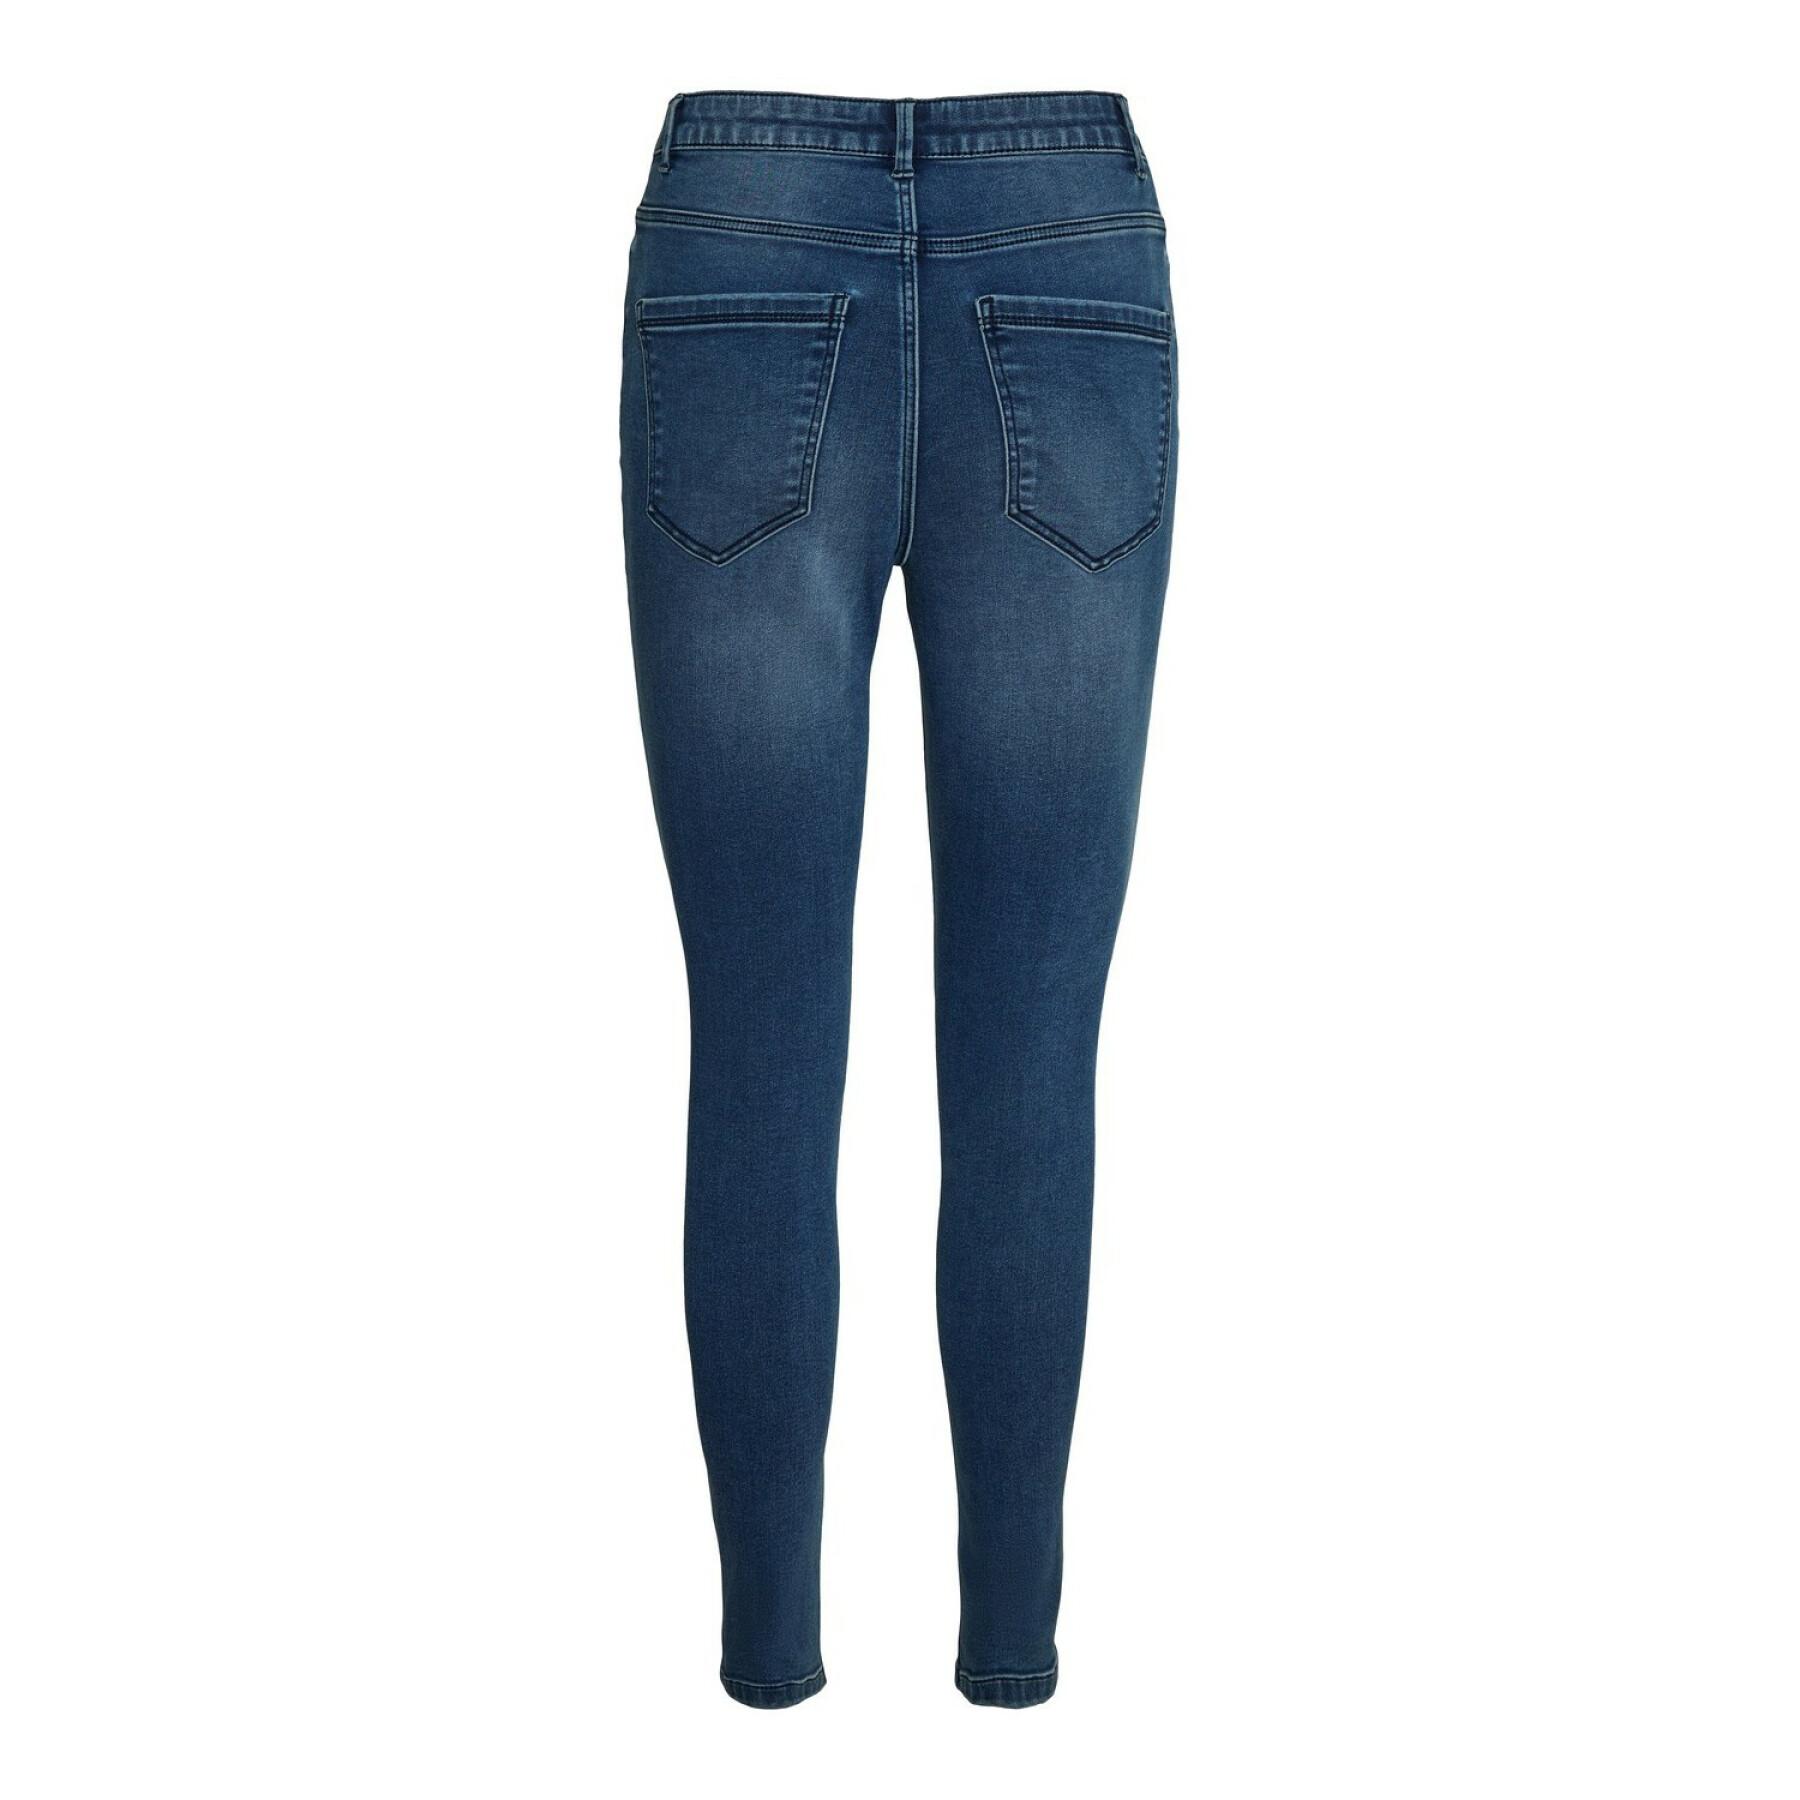 Women's skinny jeans Vero Moda vmsophia 3136